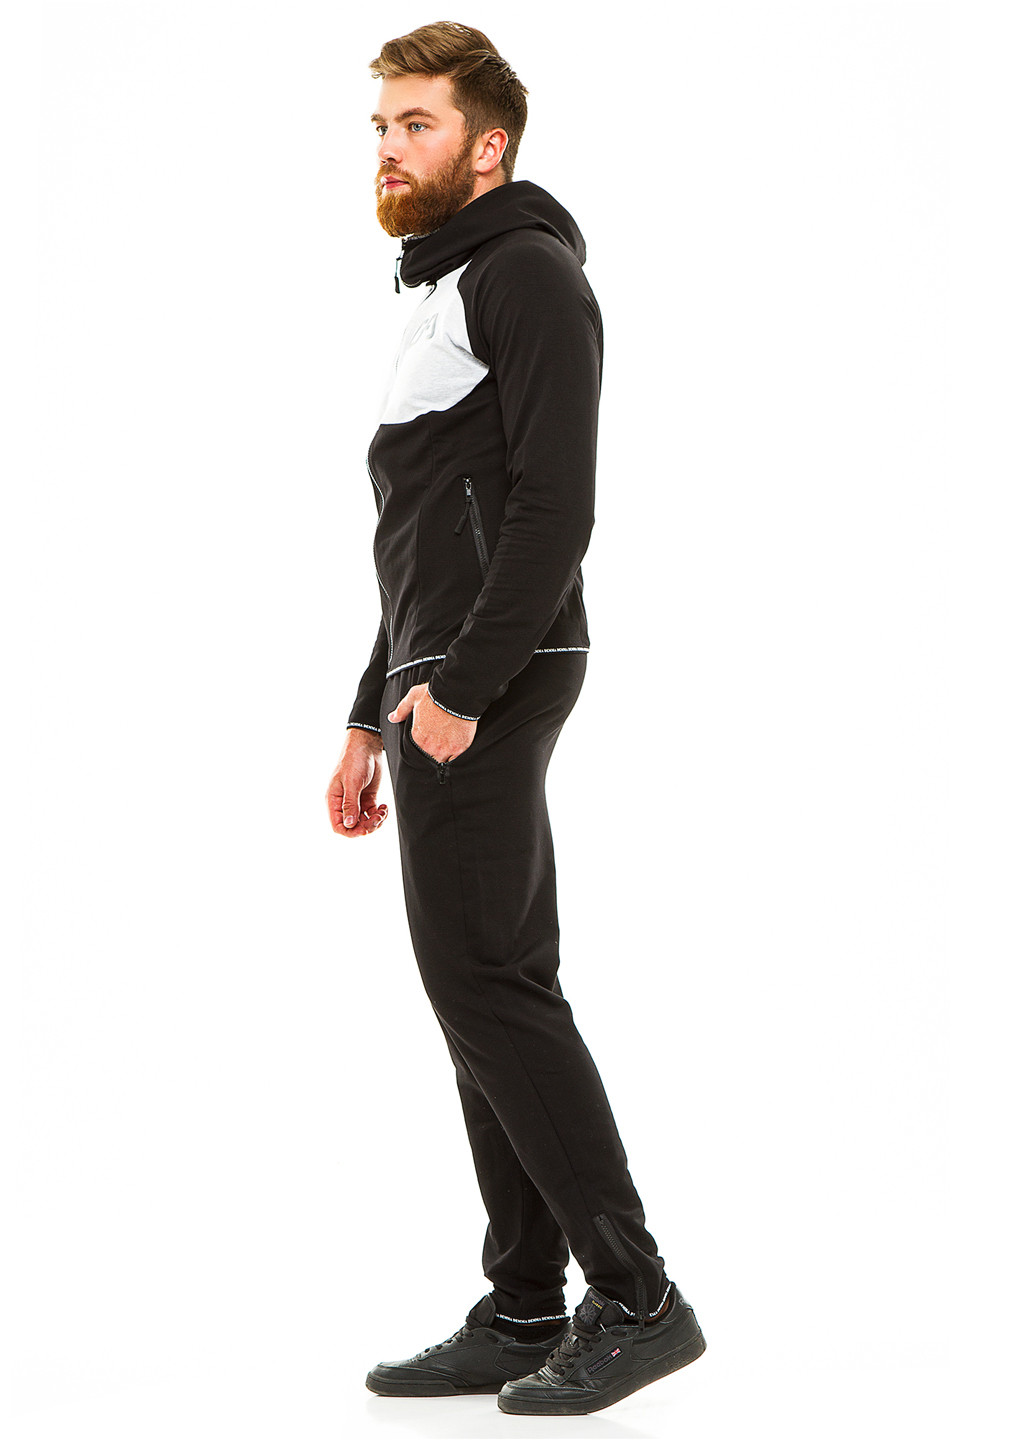 Черный демисезонный костюм (кофта, брюки) брючный Demma